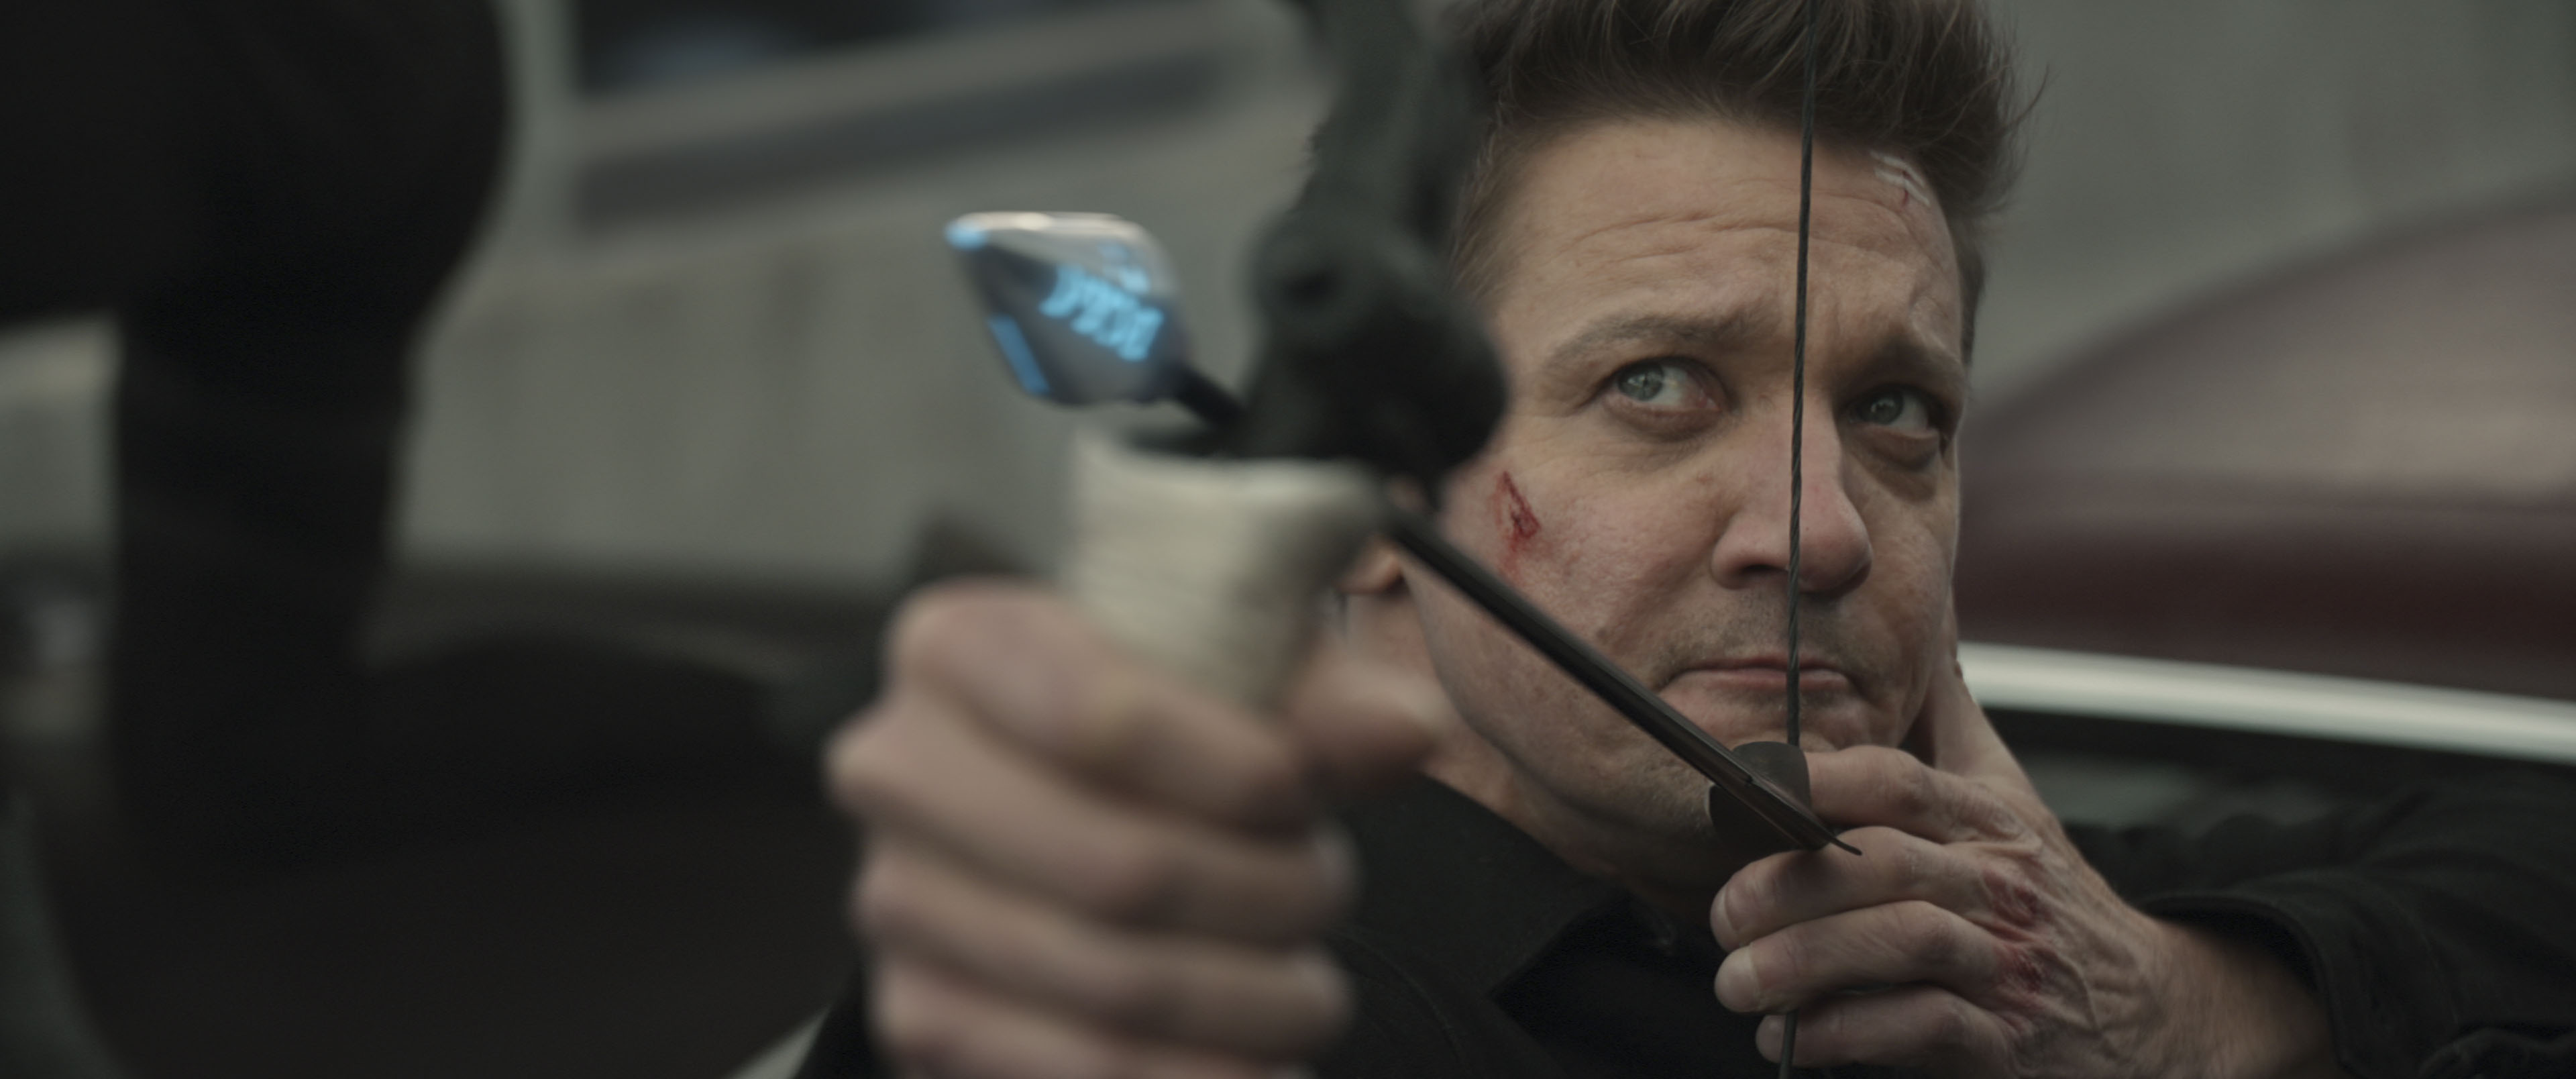 Jeremy Renner as Clint Barton/Hawkeye in Hawkeye.